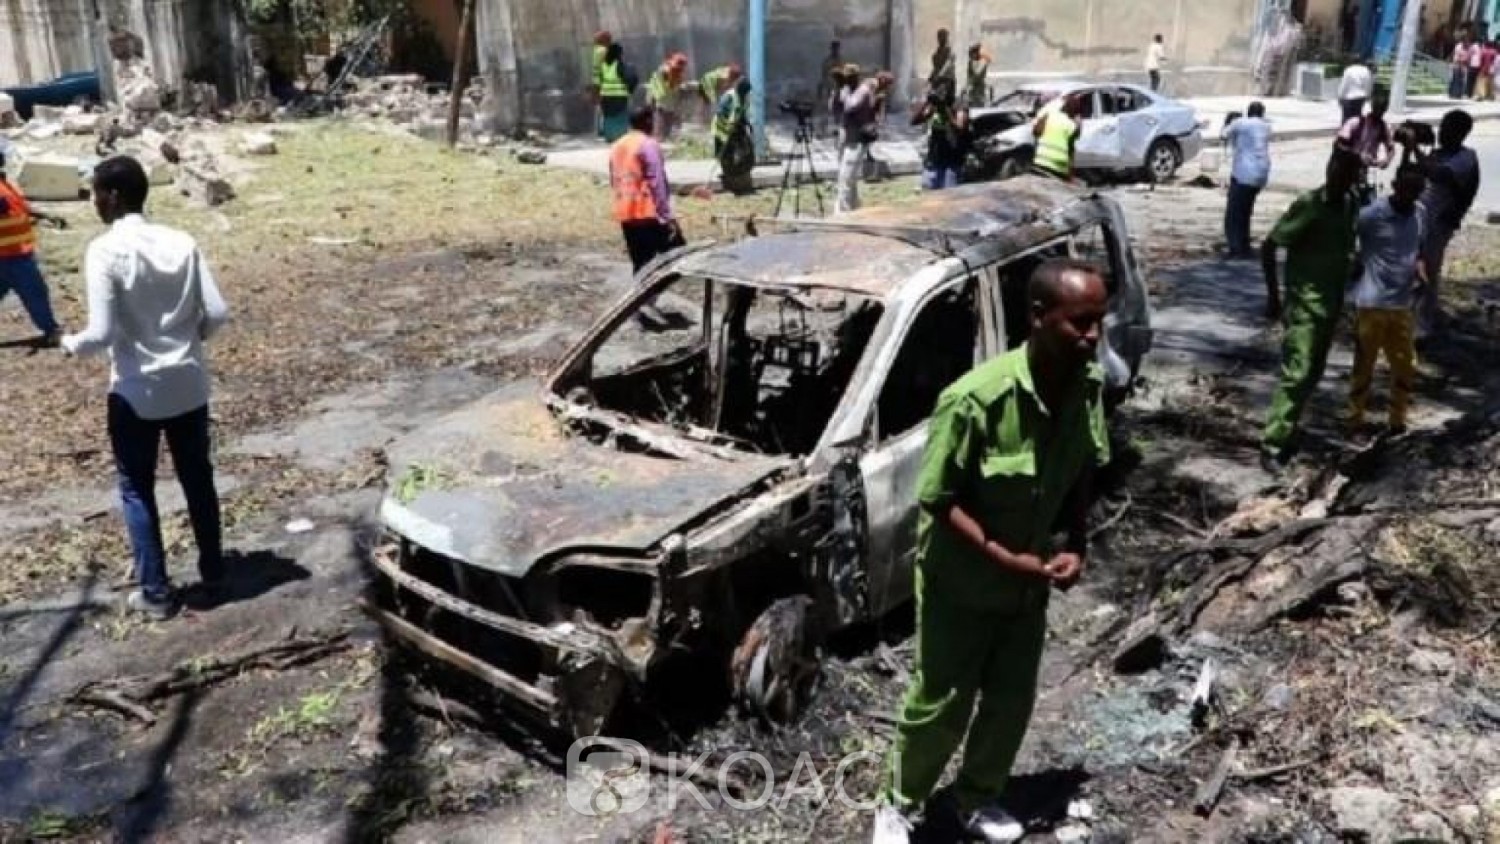 Somalie : Une mine explose au passage d'un minibus, 14 morts et 4 blessés